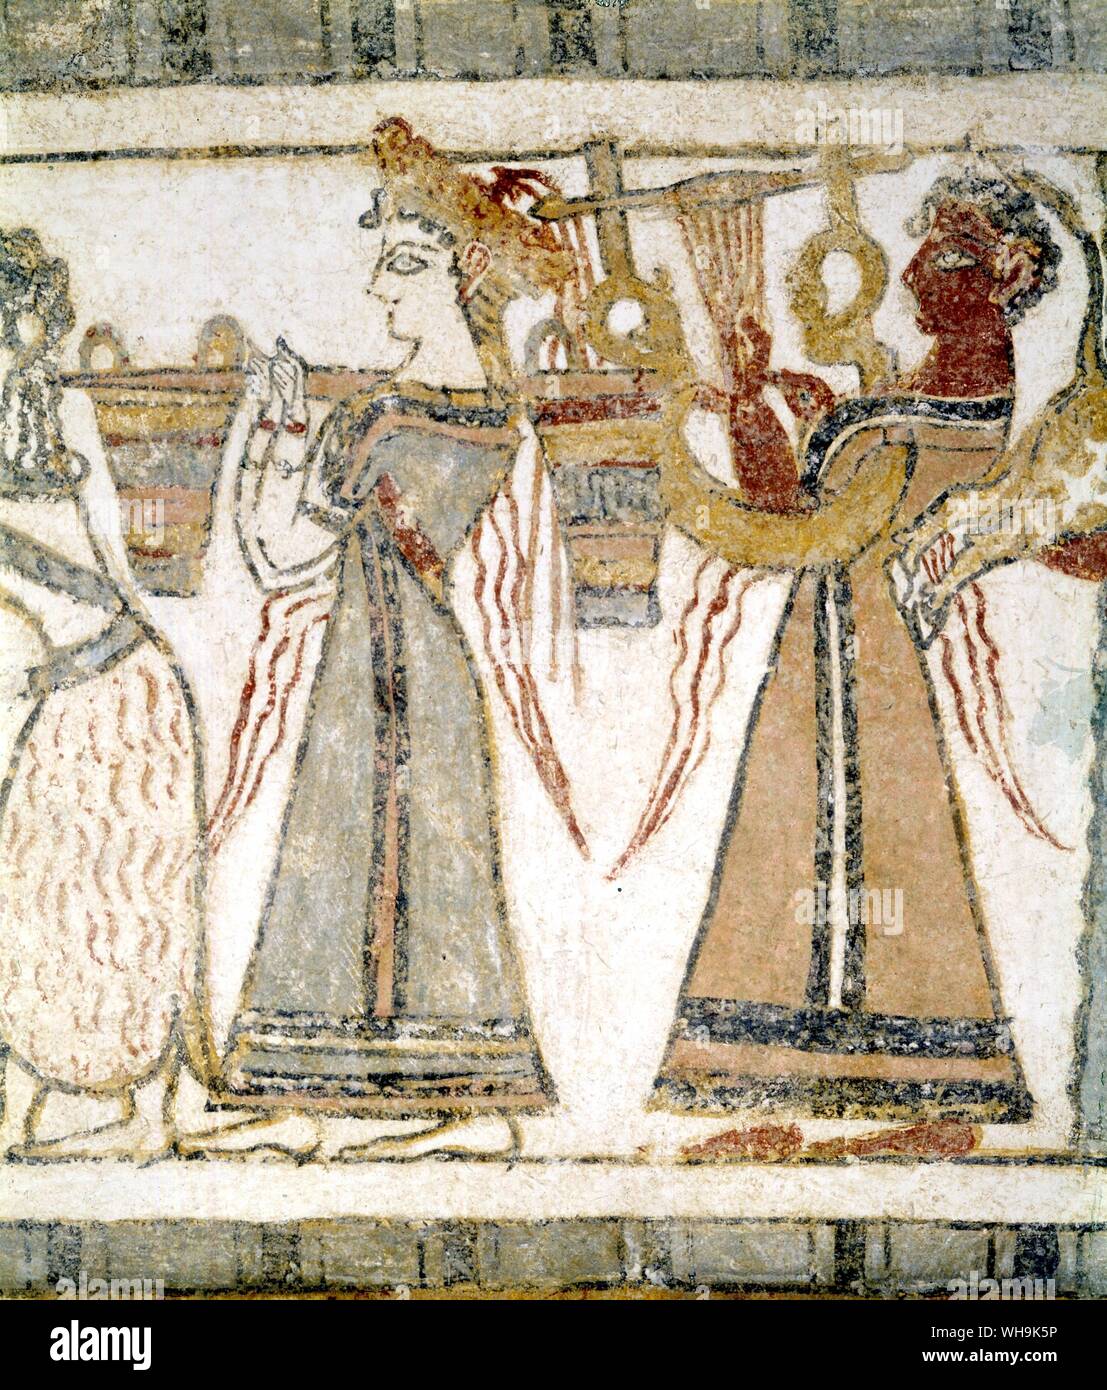 Frescos cretenses de Hagia Triada sarcófago Processsion y libaciones de |muertos Foto de stock